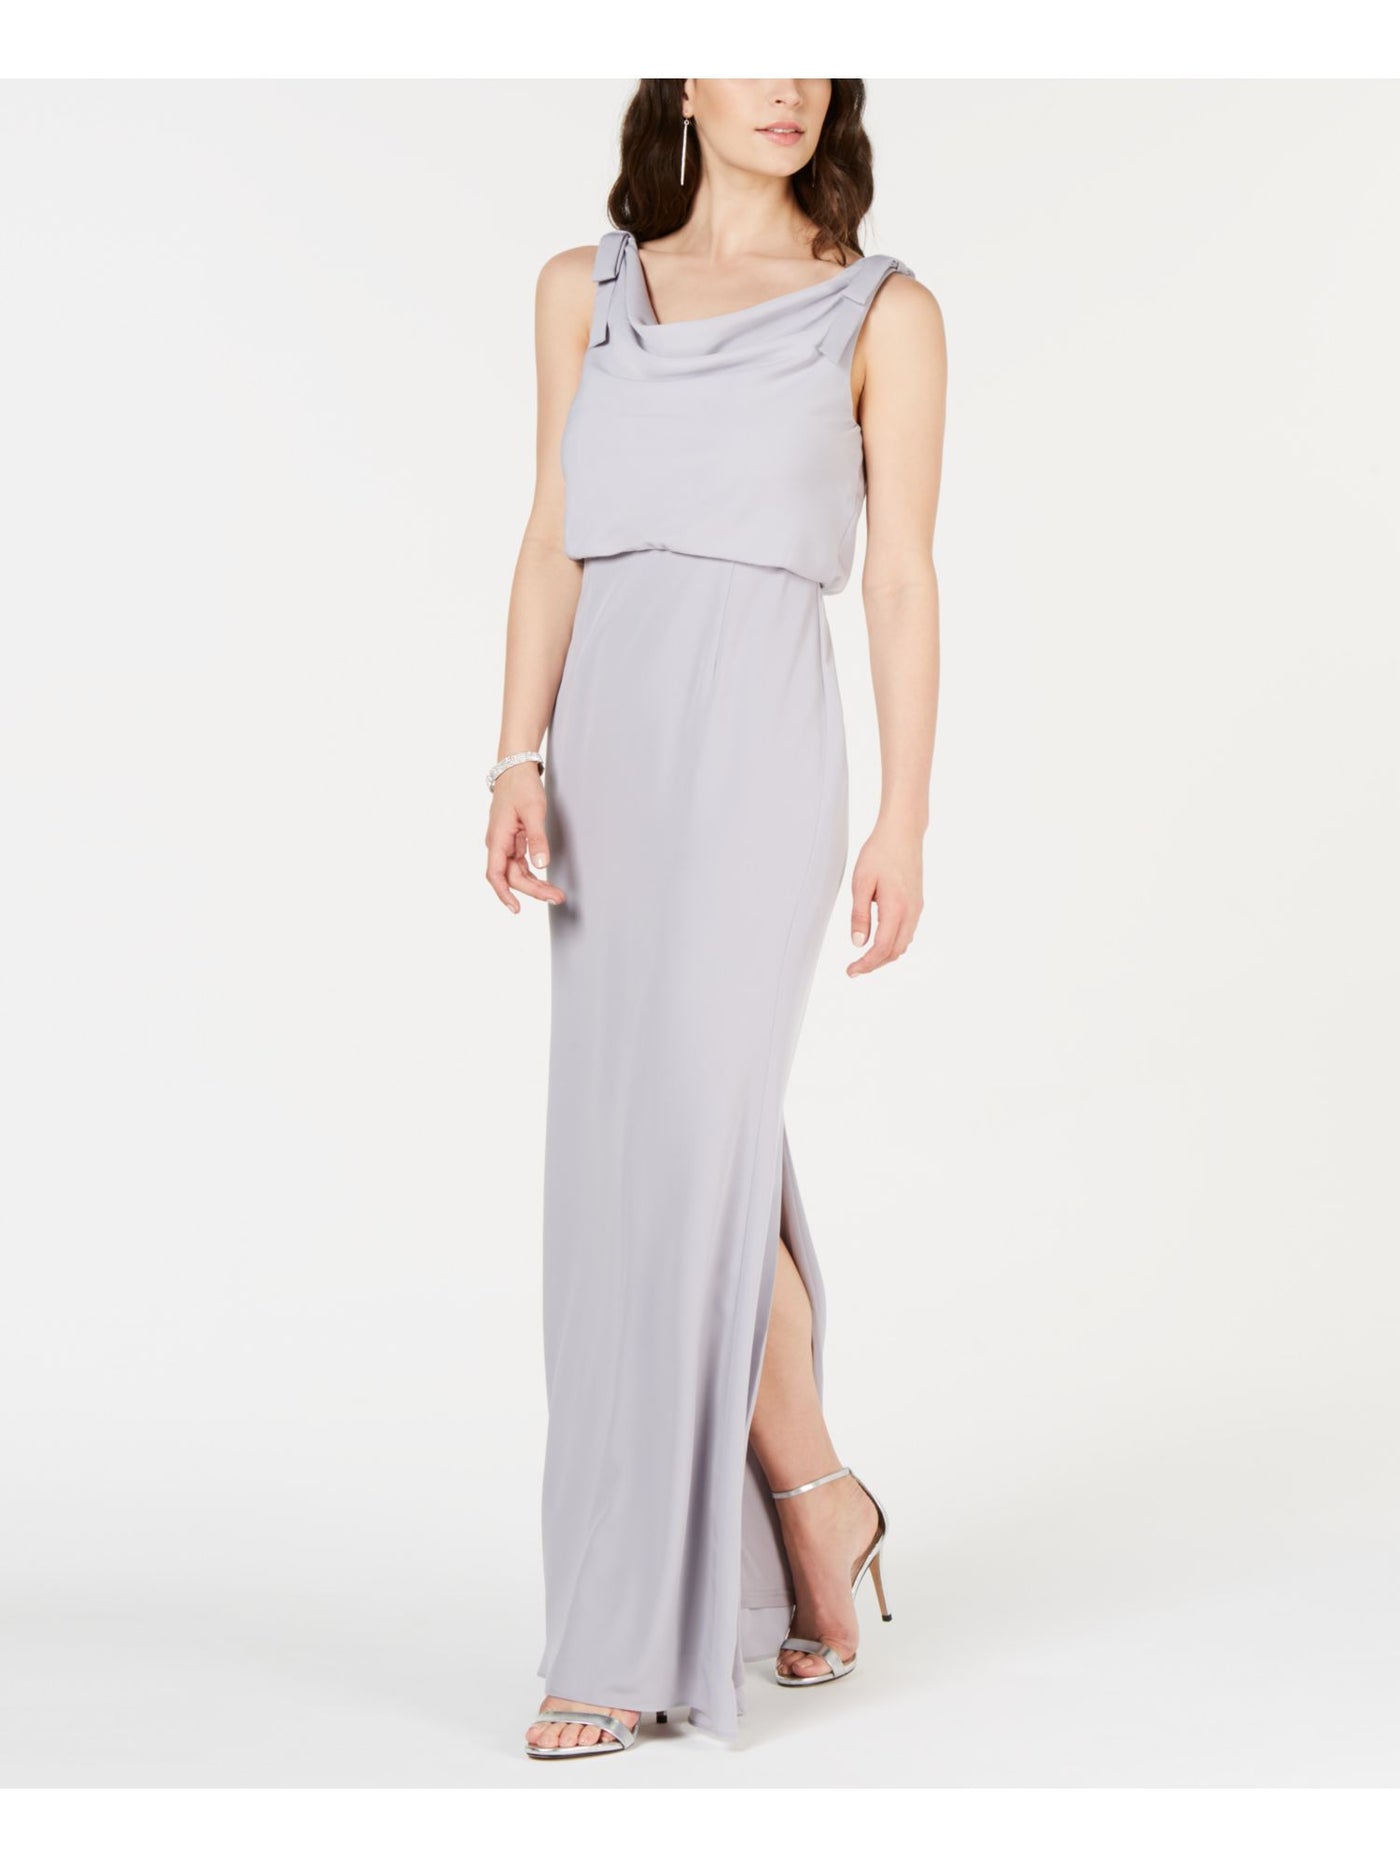 ADRIANNA PAPELL Womens Gray Slitted Sleeveless V Neck Full-Length Formal Blouson Dress 6